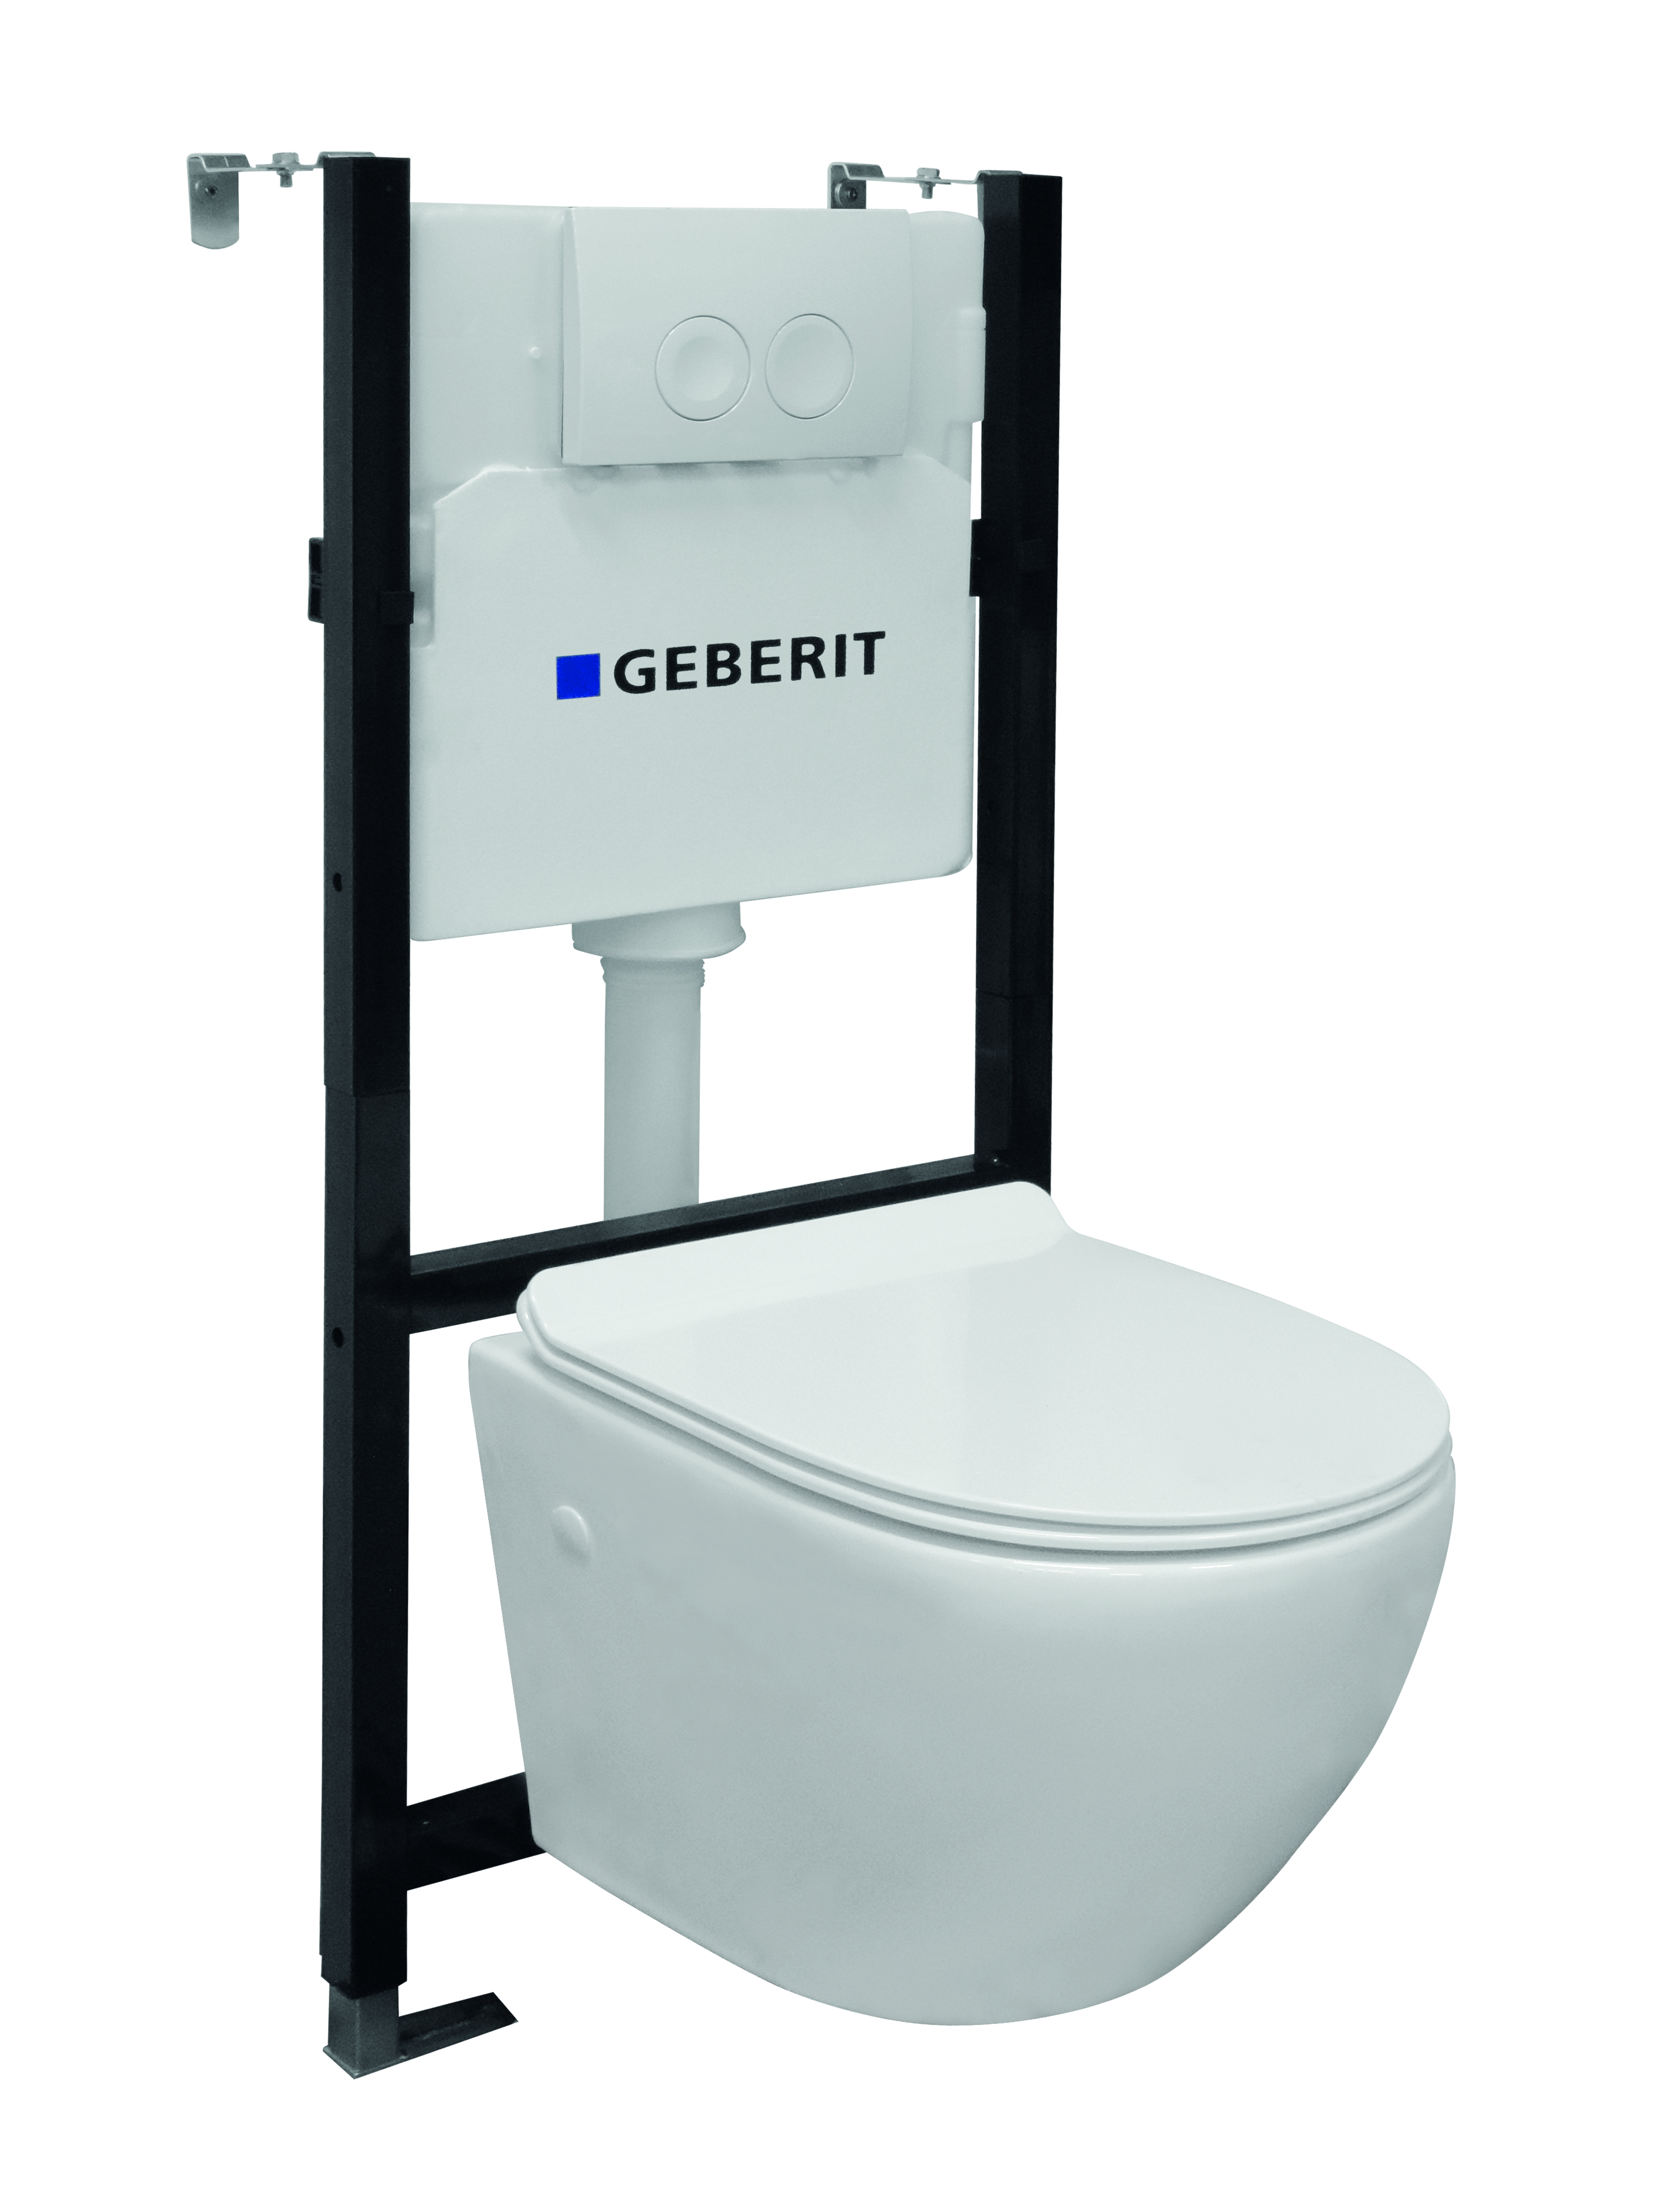 Van Marcke inbouwreservoir set Design Geberit spoeltechniek | Soft-close Randloos toiletpot